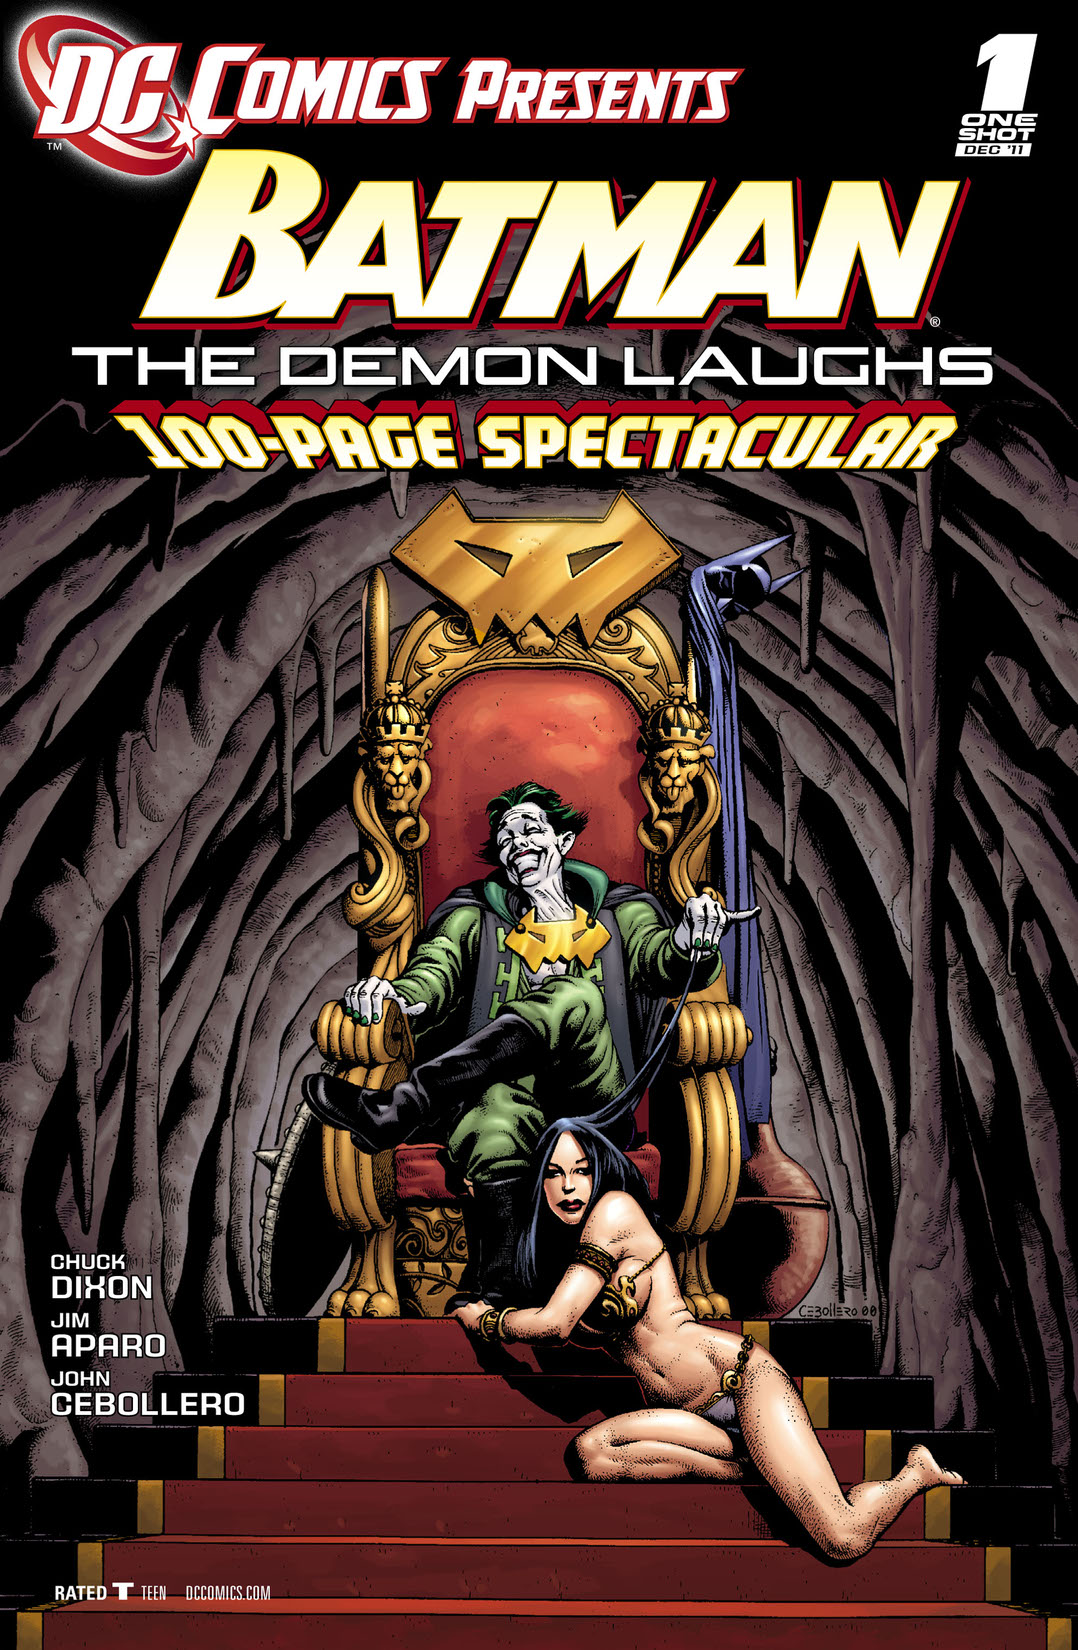 DC Comics Presents: Batman - The Demon Laughs (2011-) #1 preview images